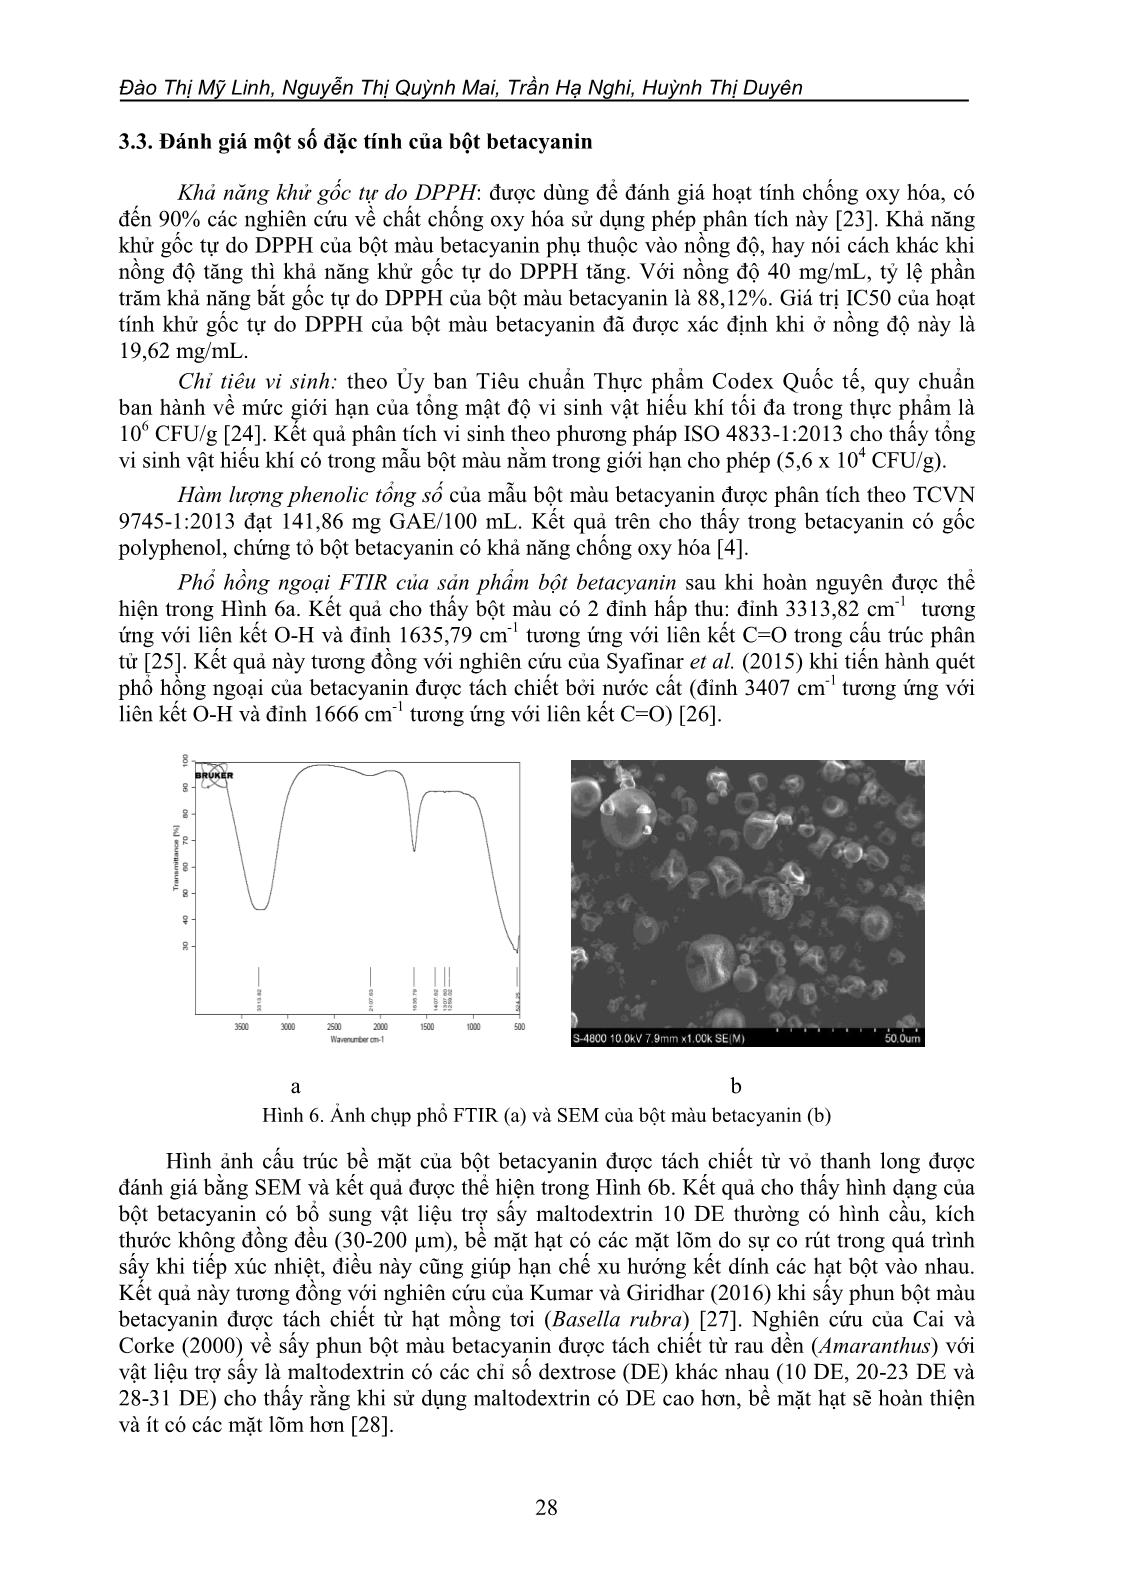 Nghiên cứu quá trình tạo bột màu Betacyanin thu nhận từ vỏ quả thanh long (Hylocereus undatus) trang 8